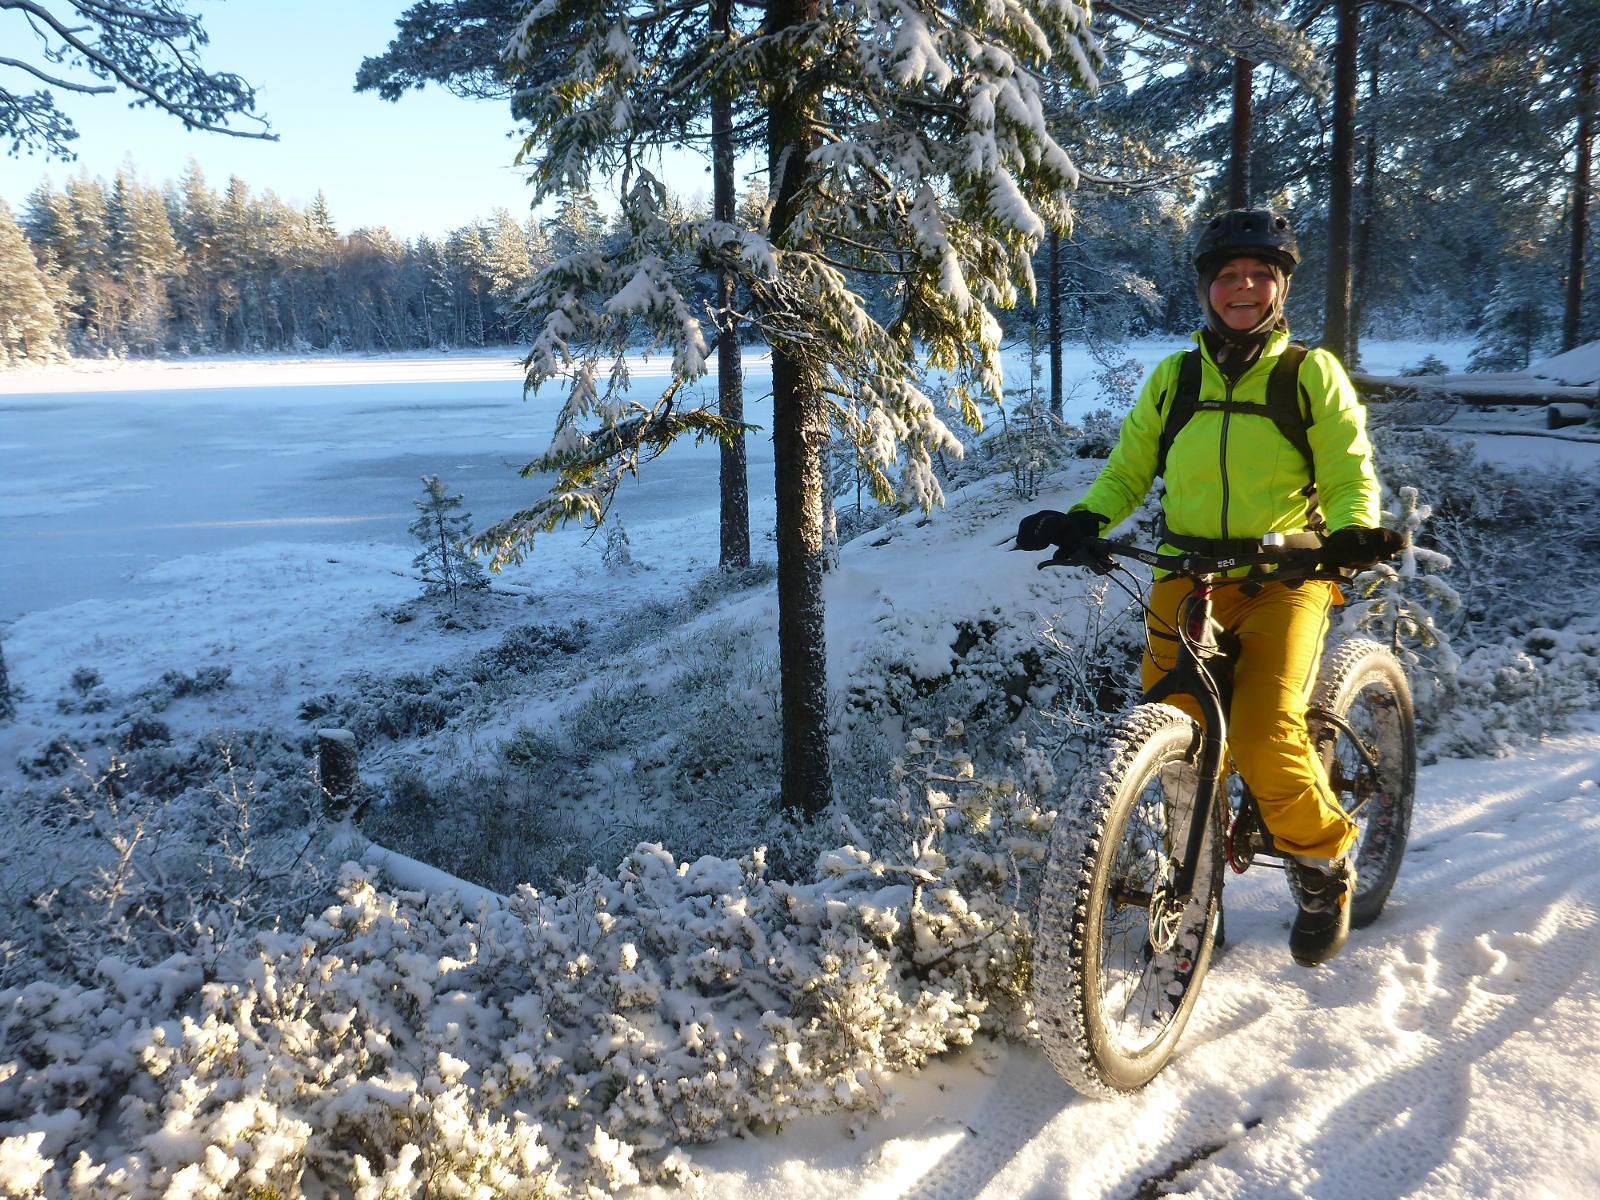 - Fatbike gir meg mulighet til å sykle i skogen om vinteren, sier Lena Øverbye på tur i Romeriksåsen. - Vi tar hensyn og holder oss til stier eller scooterløyper.